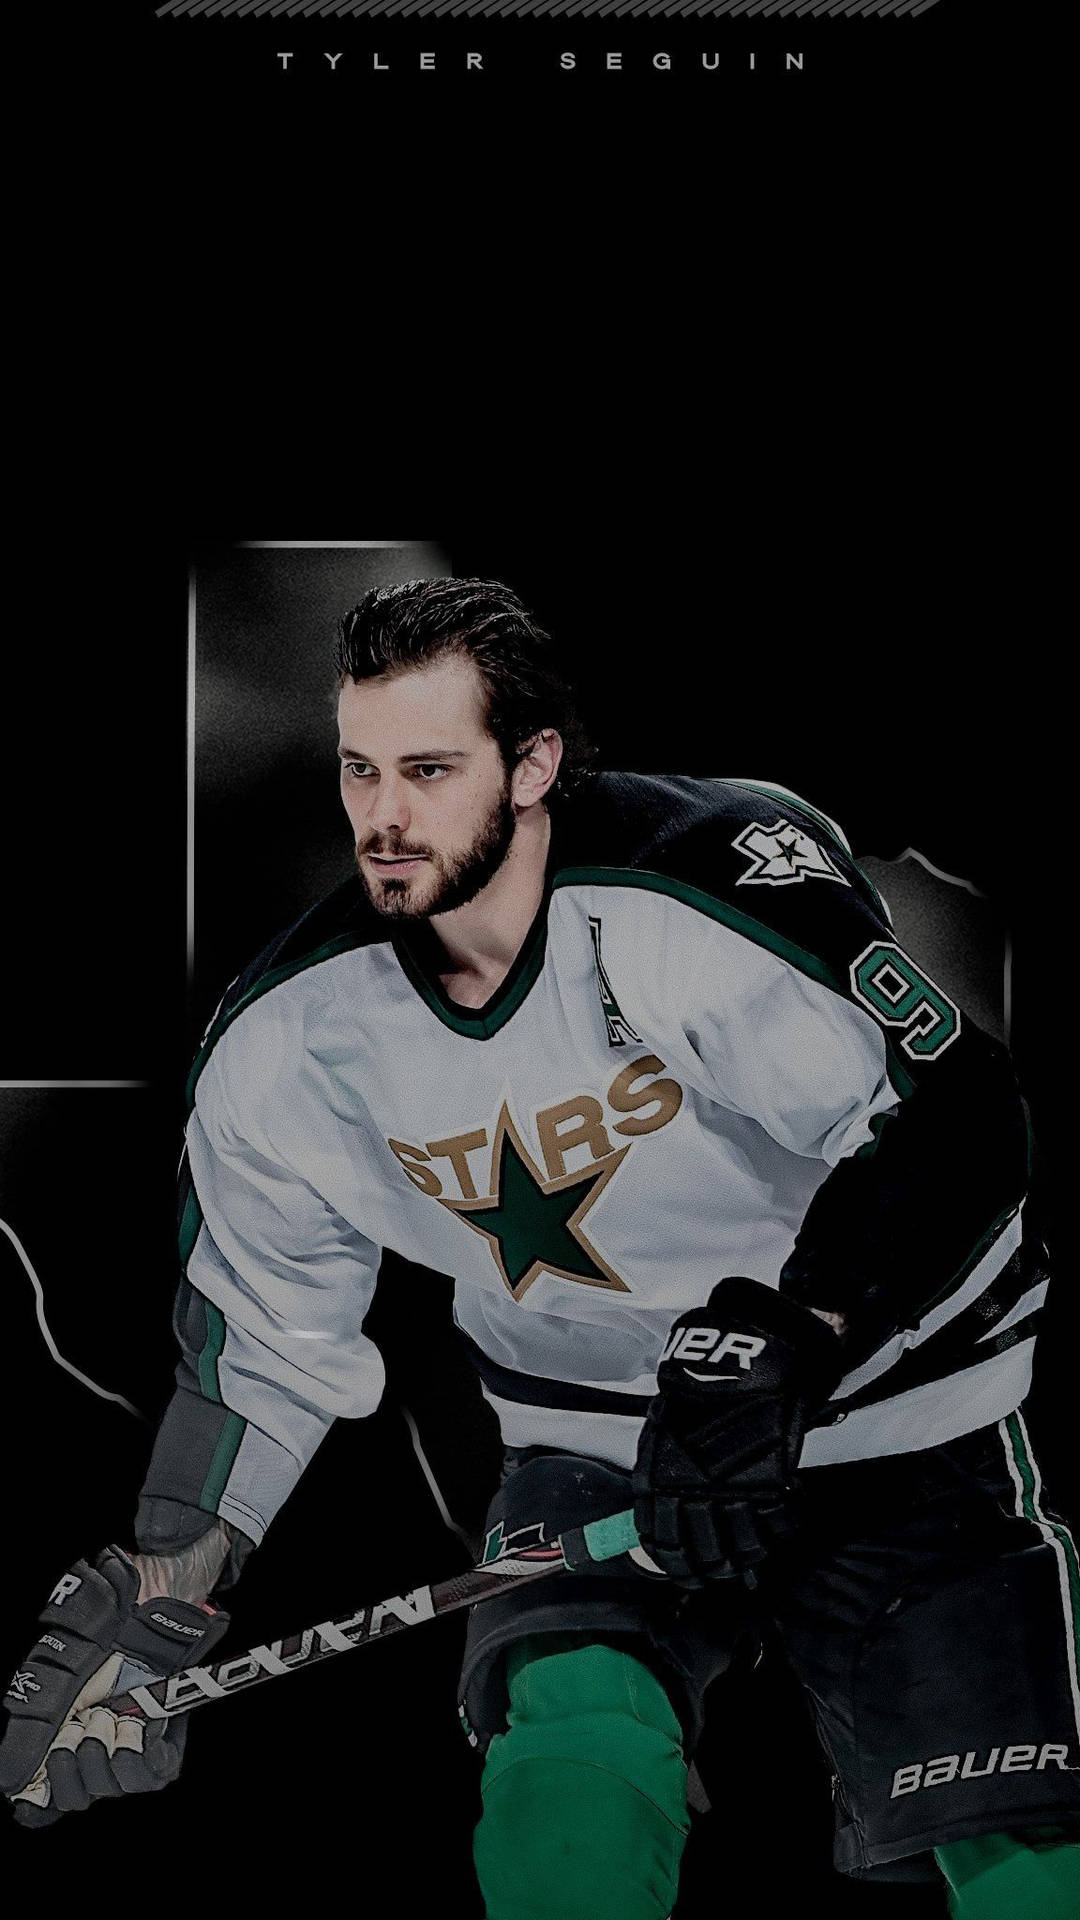 Tyler Seguin Hockey Paper Poster Stars 2